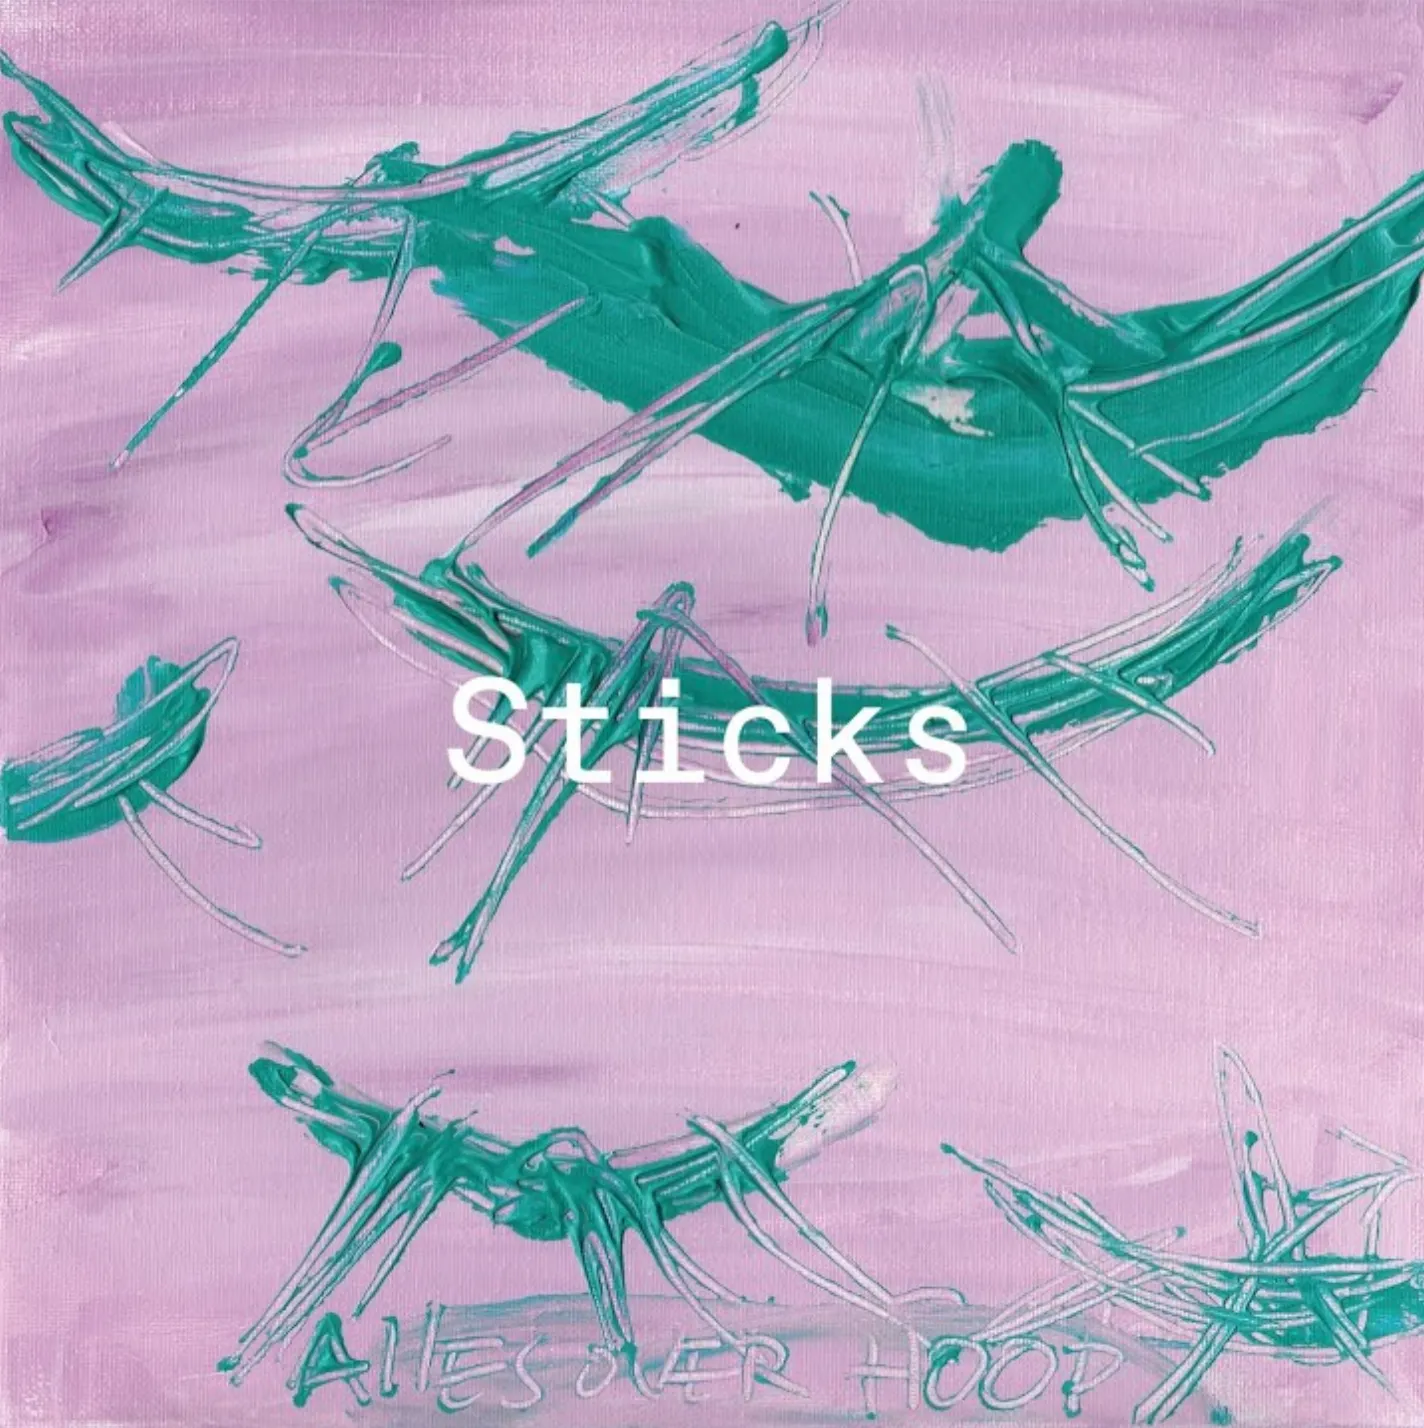 Na ruim twintig jaar is Sticks nog steeds in topvorm op Alles Over Hoop album met o.a. Sevn Alias, Kempi & Winne